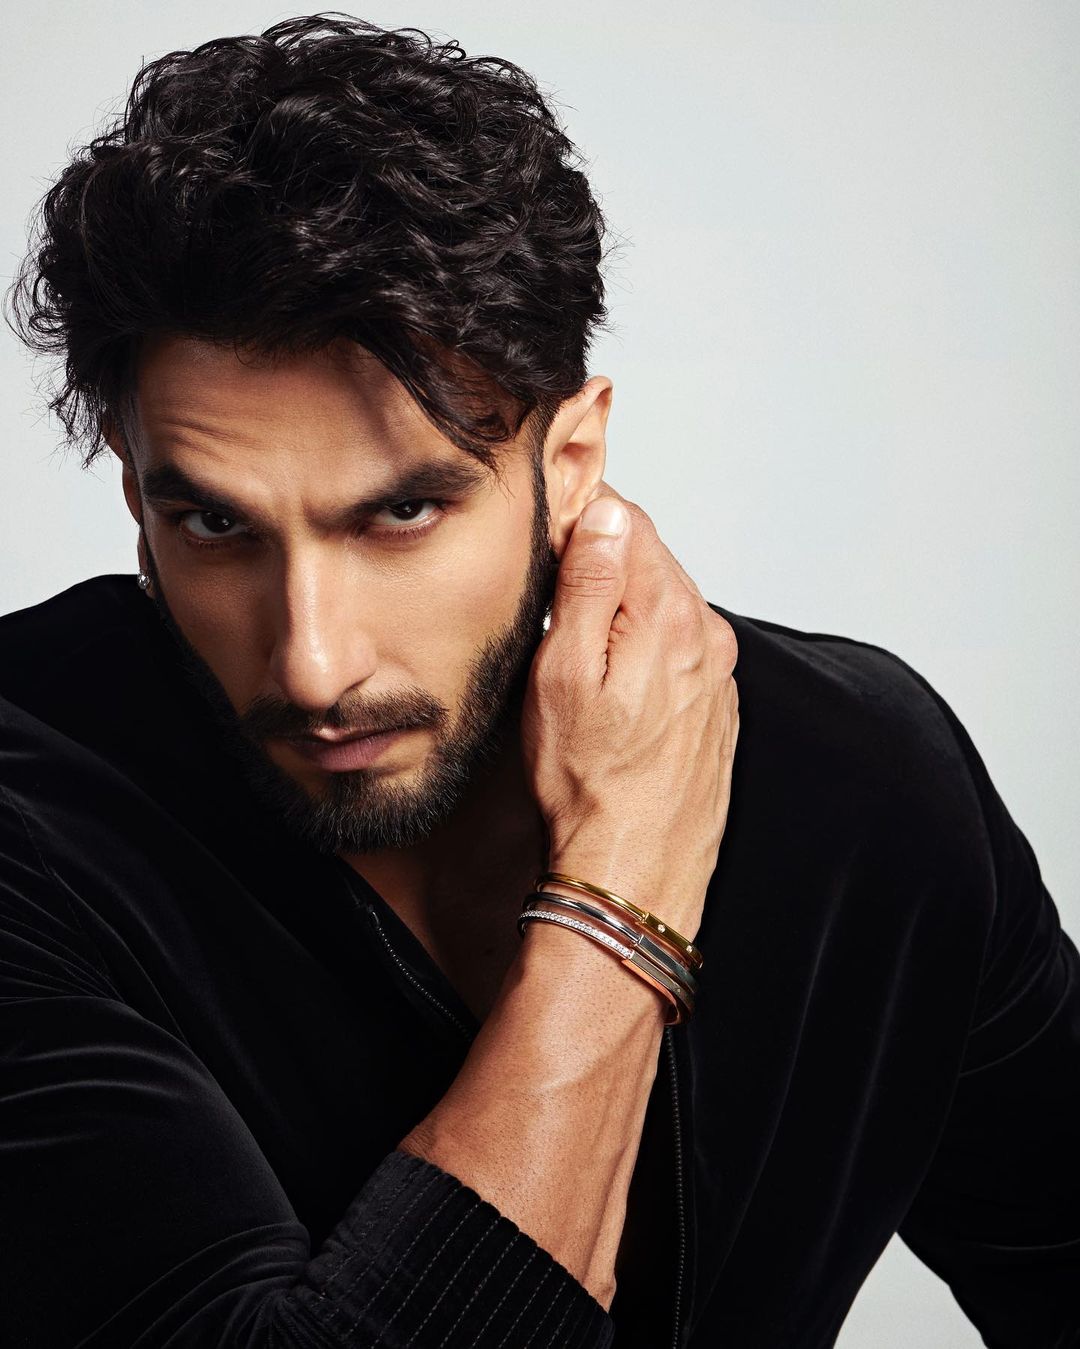 Ranveer Singh Sports New Look With Short Hair & Groomed Beard For